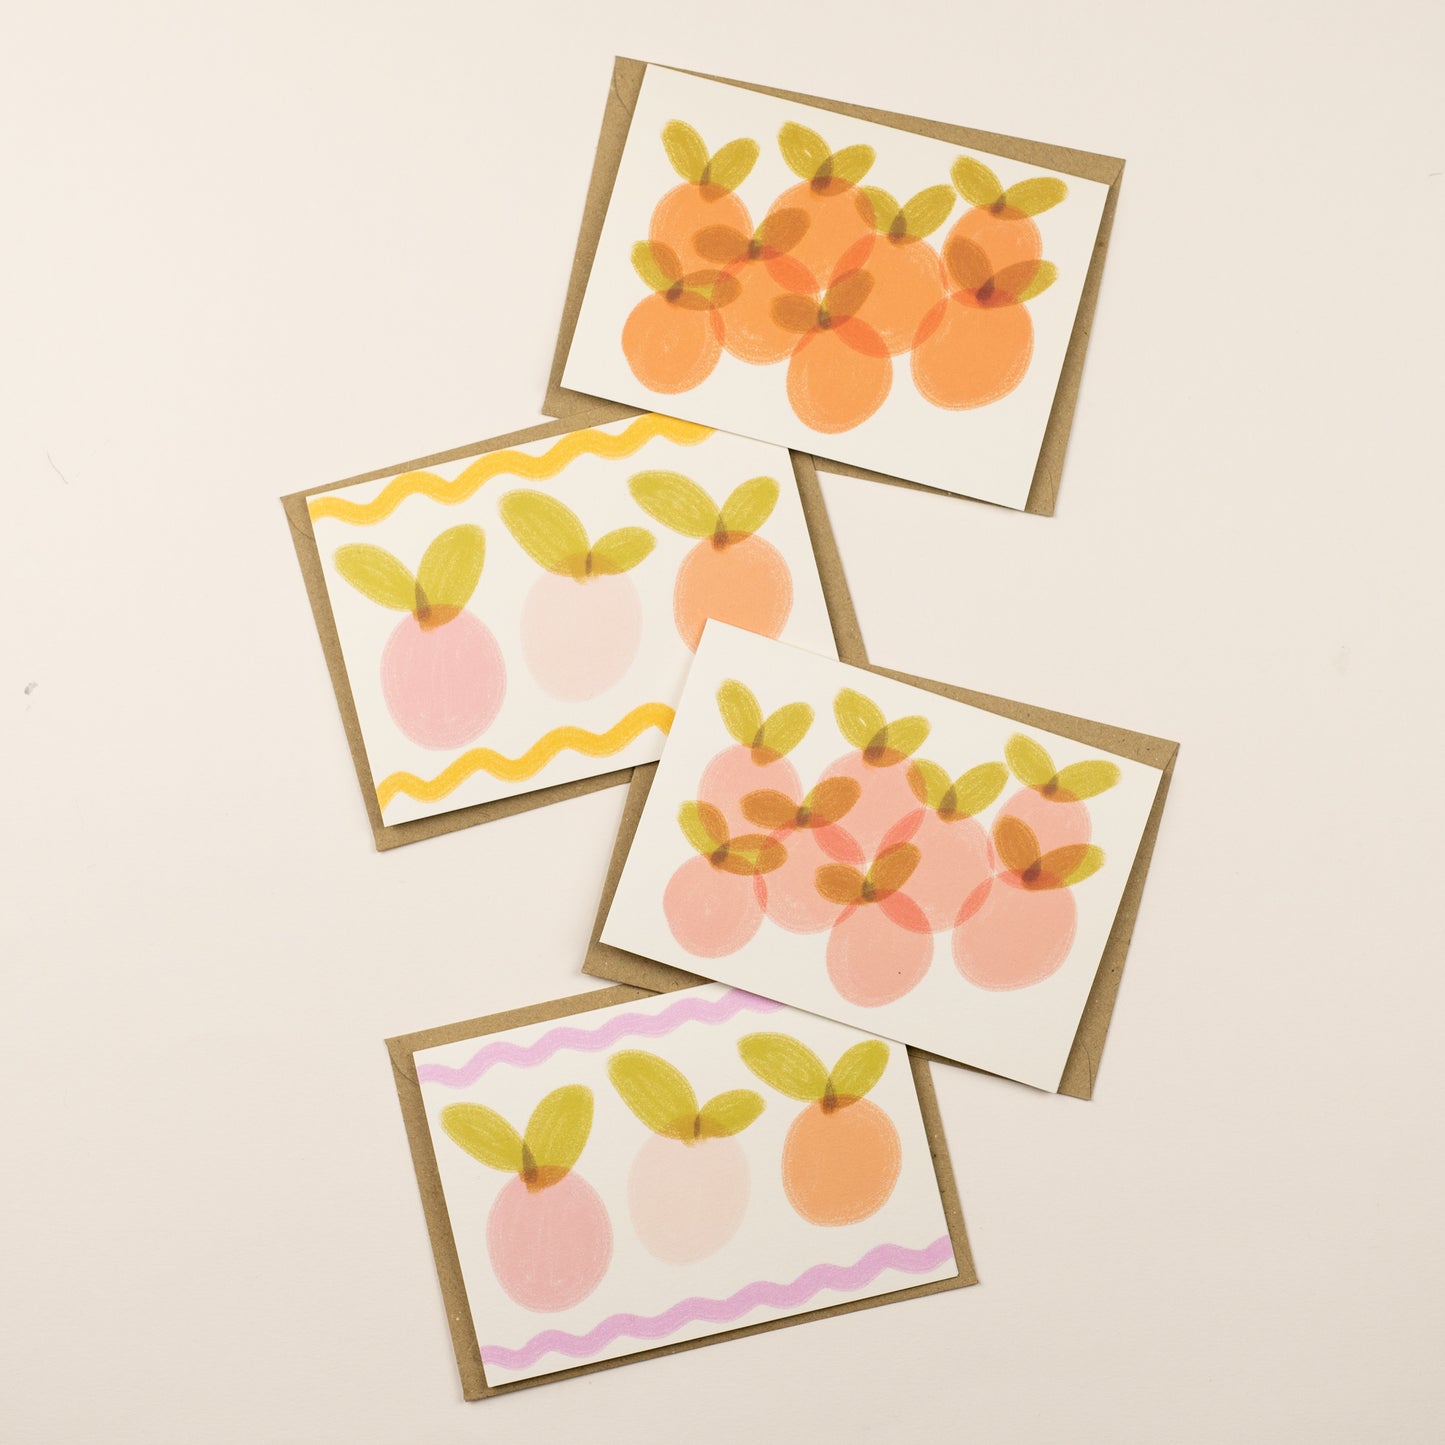 Fruit Card pack bundle - pack of 4 cards